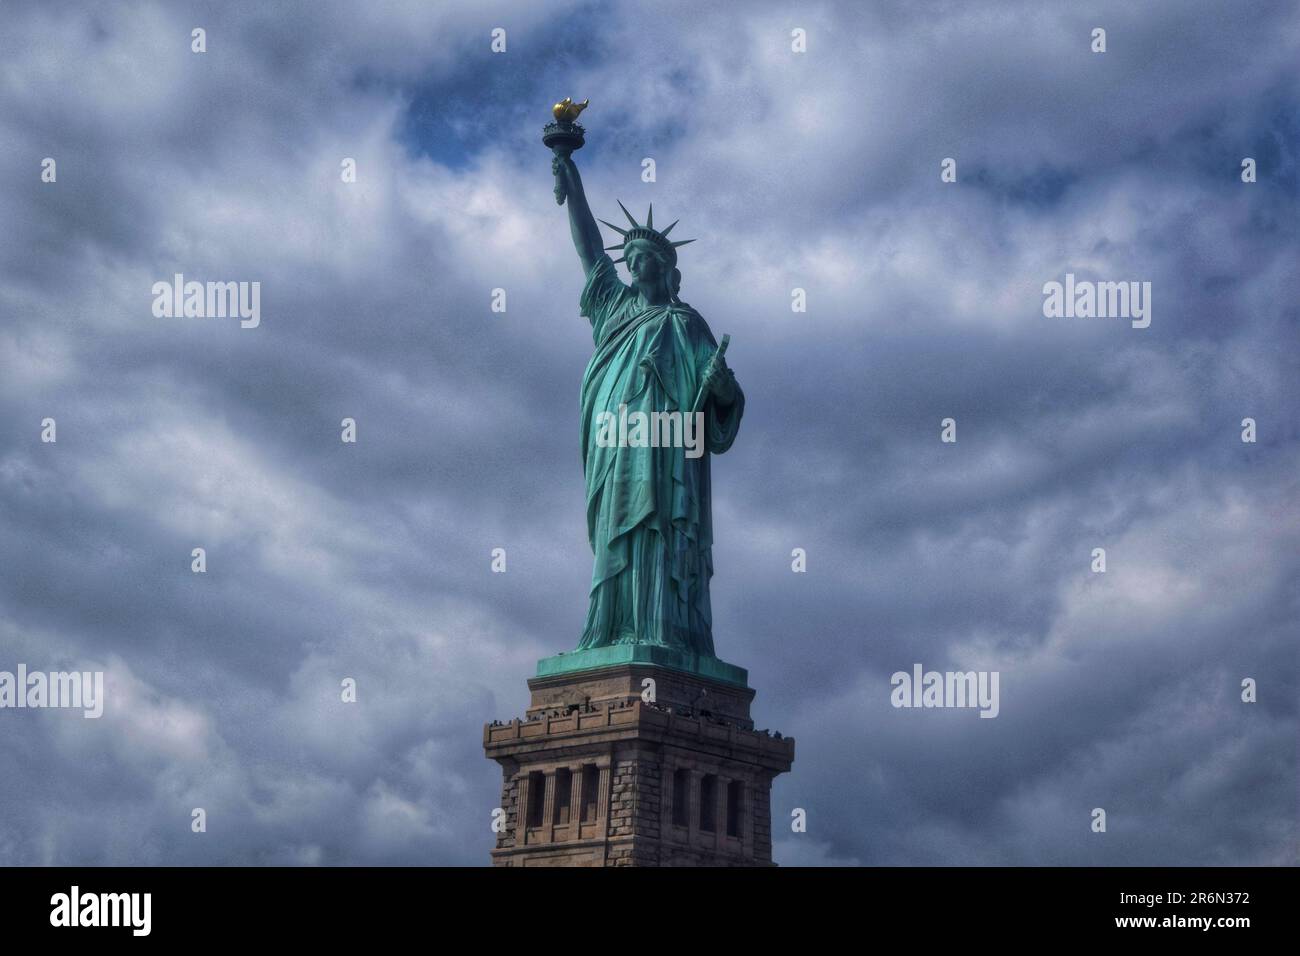 Esplora il fascino senza tempo di New York City e la Statua della libertà attraverso accattivanti fotografie, rivelando l'energia vibrante e iconica della città Foto Stock